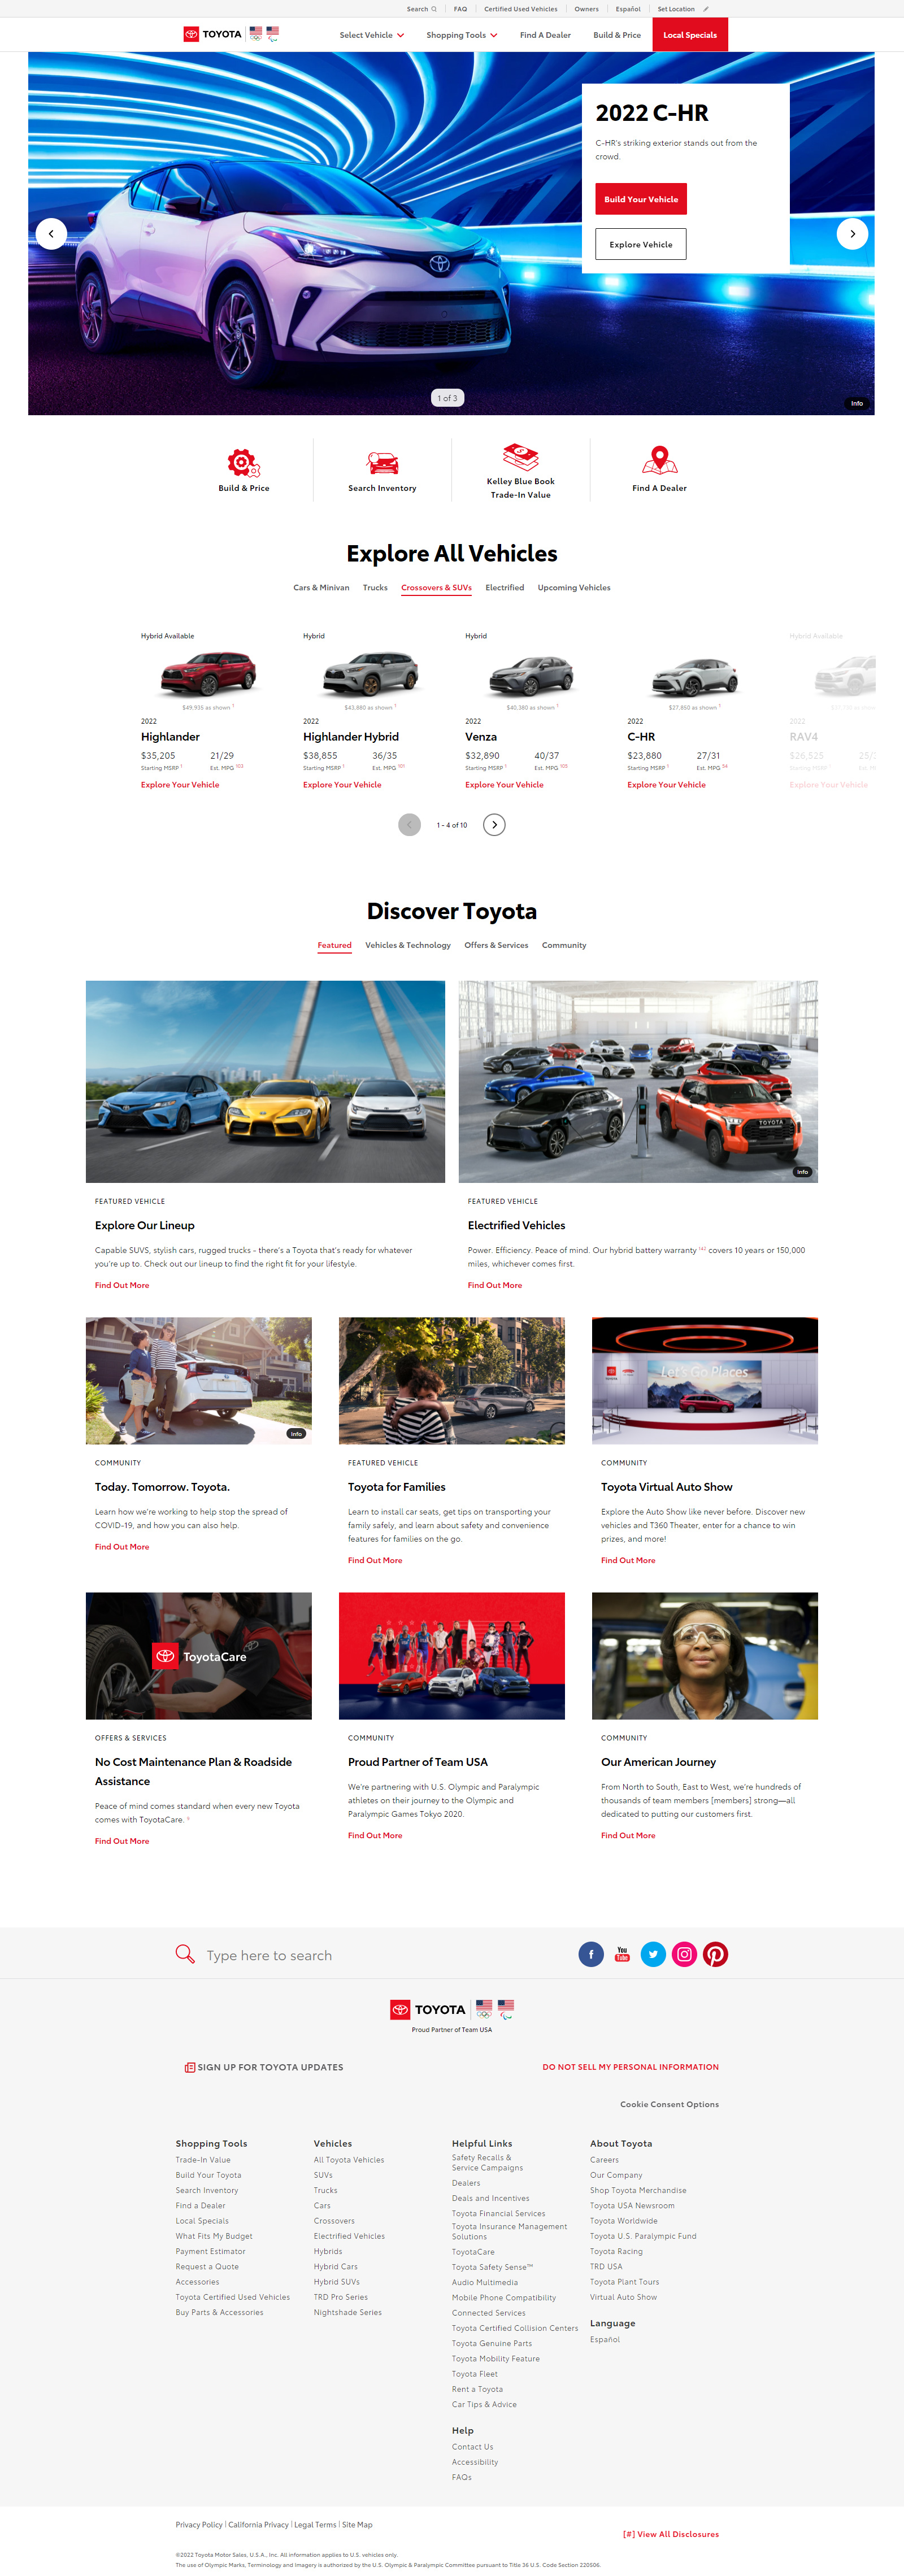 Toyota website in 2022